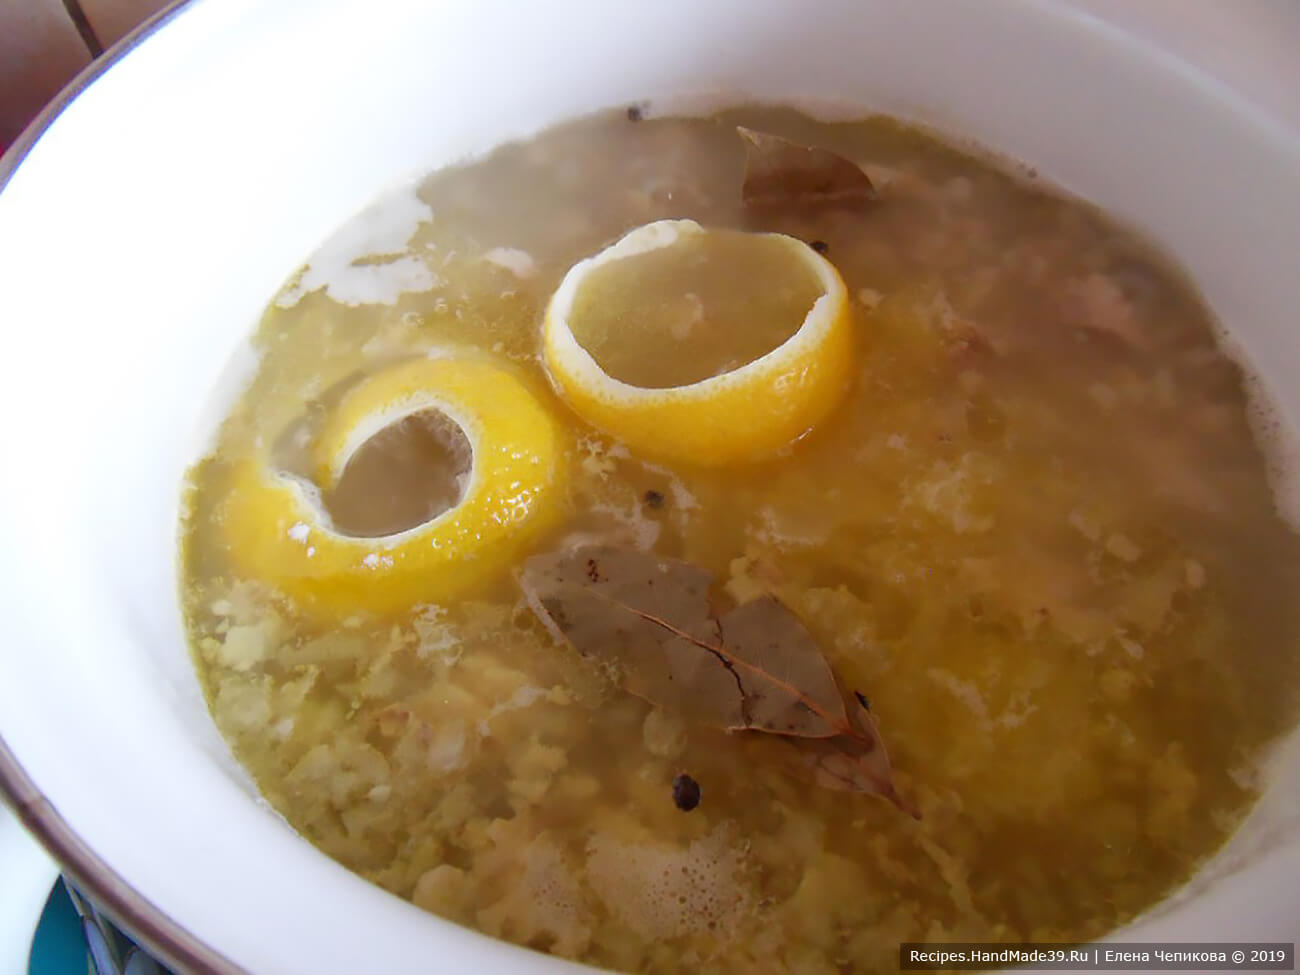 Добавить в суп цедру и мякоть лимона, проварить 1 минуту, выключить огонь. Цедру вынуть из супа. Дать супу настояться 5-10 минут